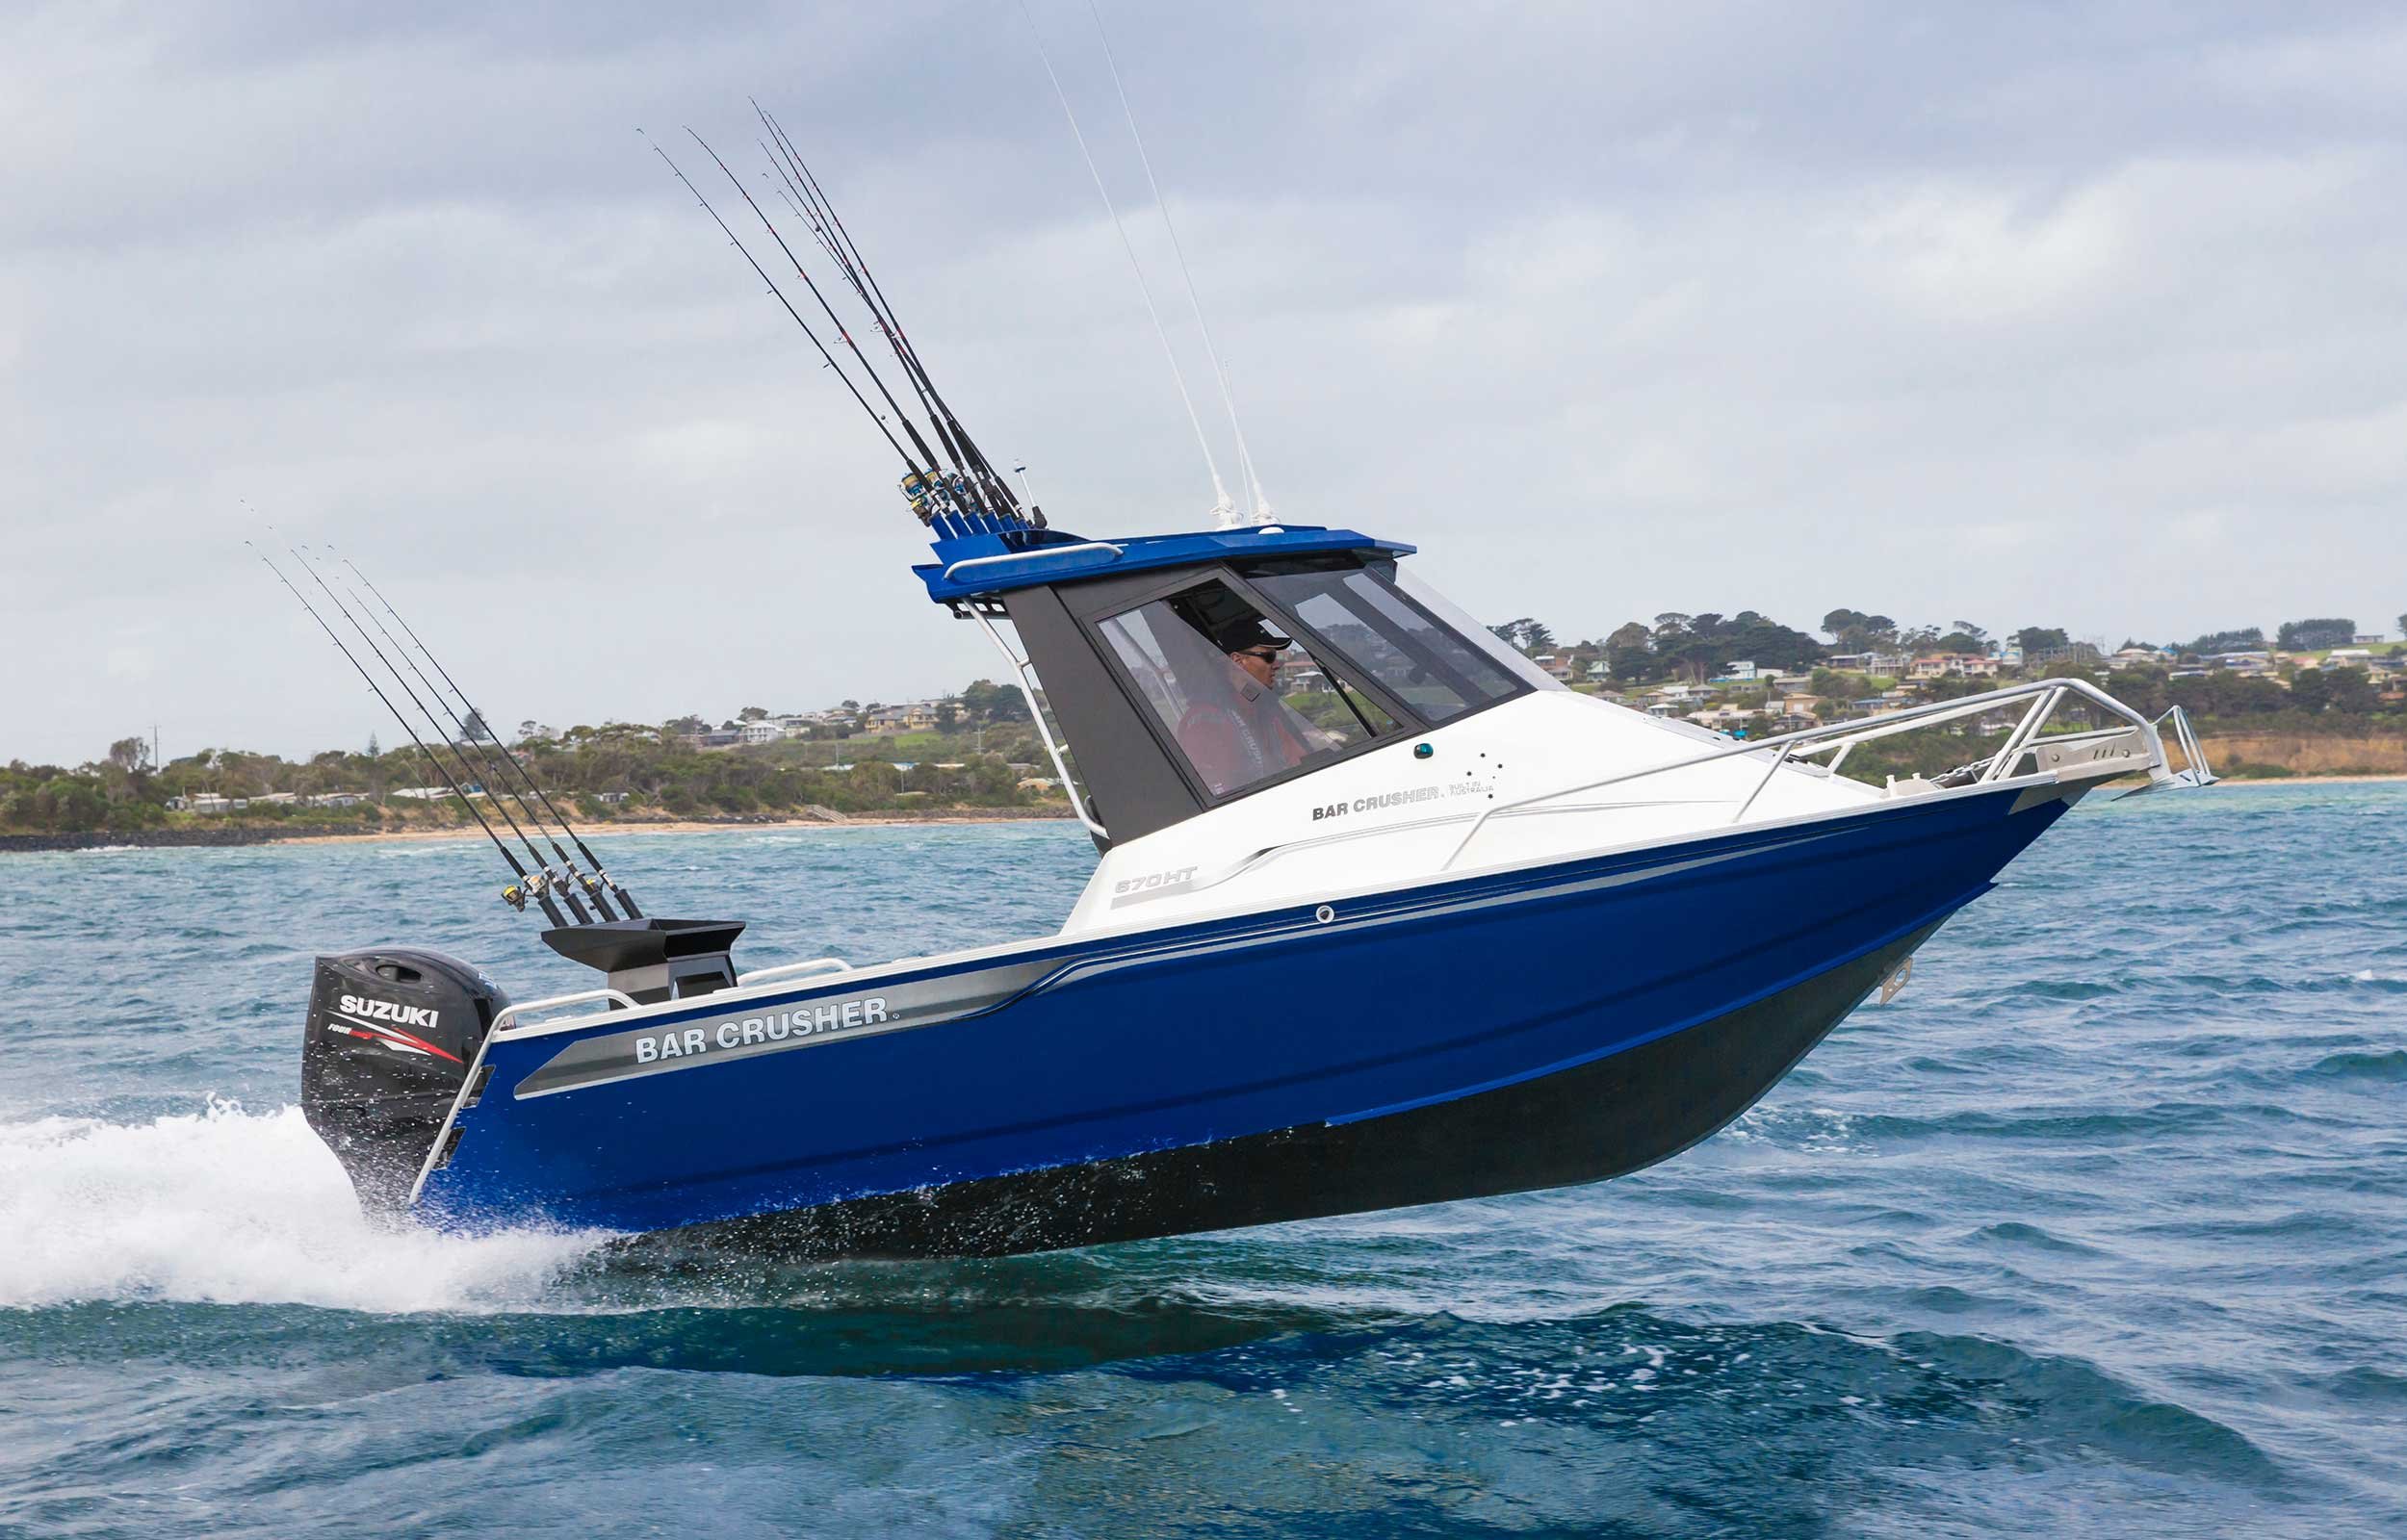 models-bar-crusher-670ht-plate-aluminium-fishing-boat-web-3